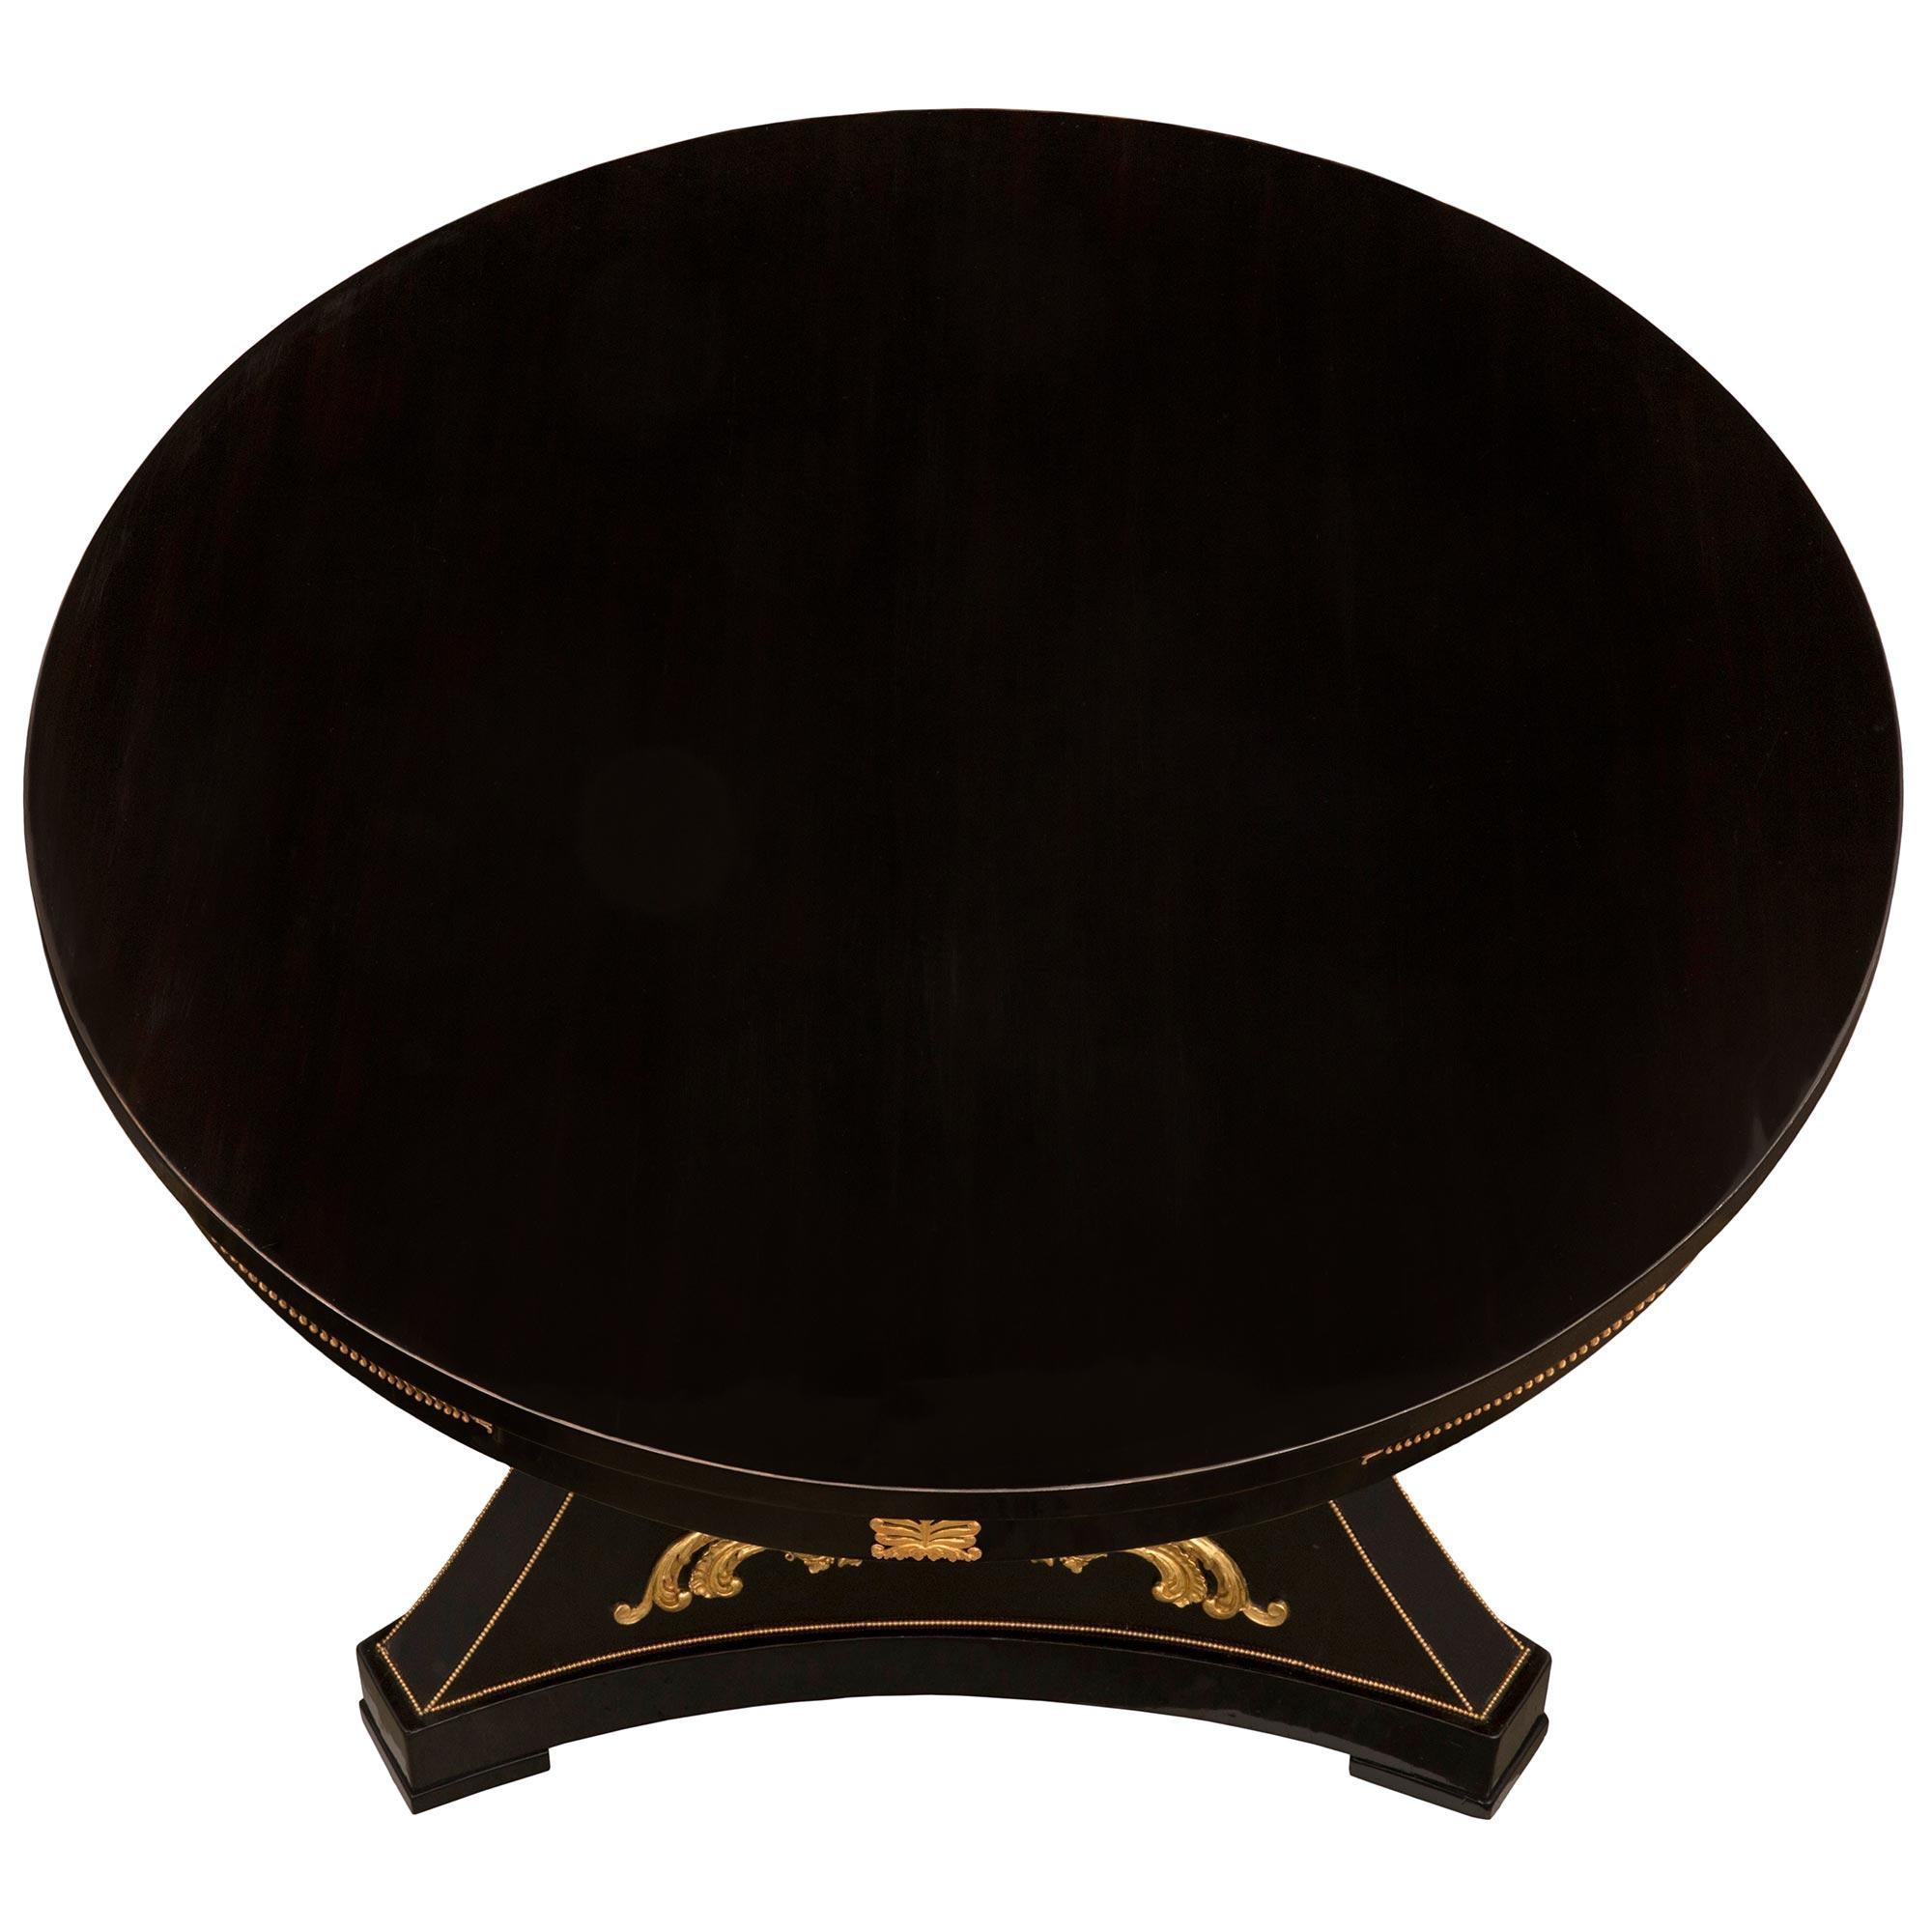 Impressionnante table centrale en ébène, bronze doré et bois doré d'époque Napoléon III. La table circulaire est surélevée par un support triangulaire élégamment incurvé avec des coins coupés et des côtés concaves, le tout au-dessus des roulettes